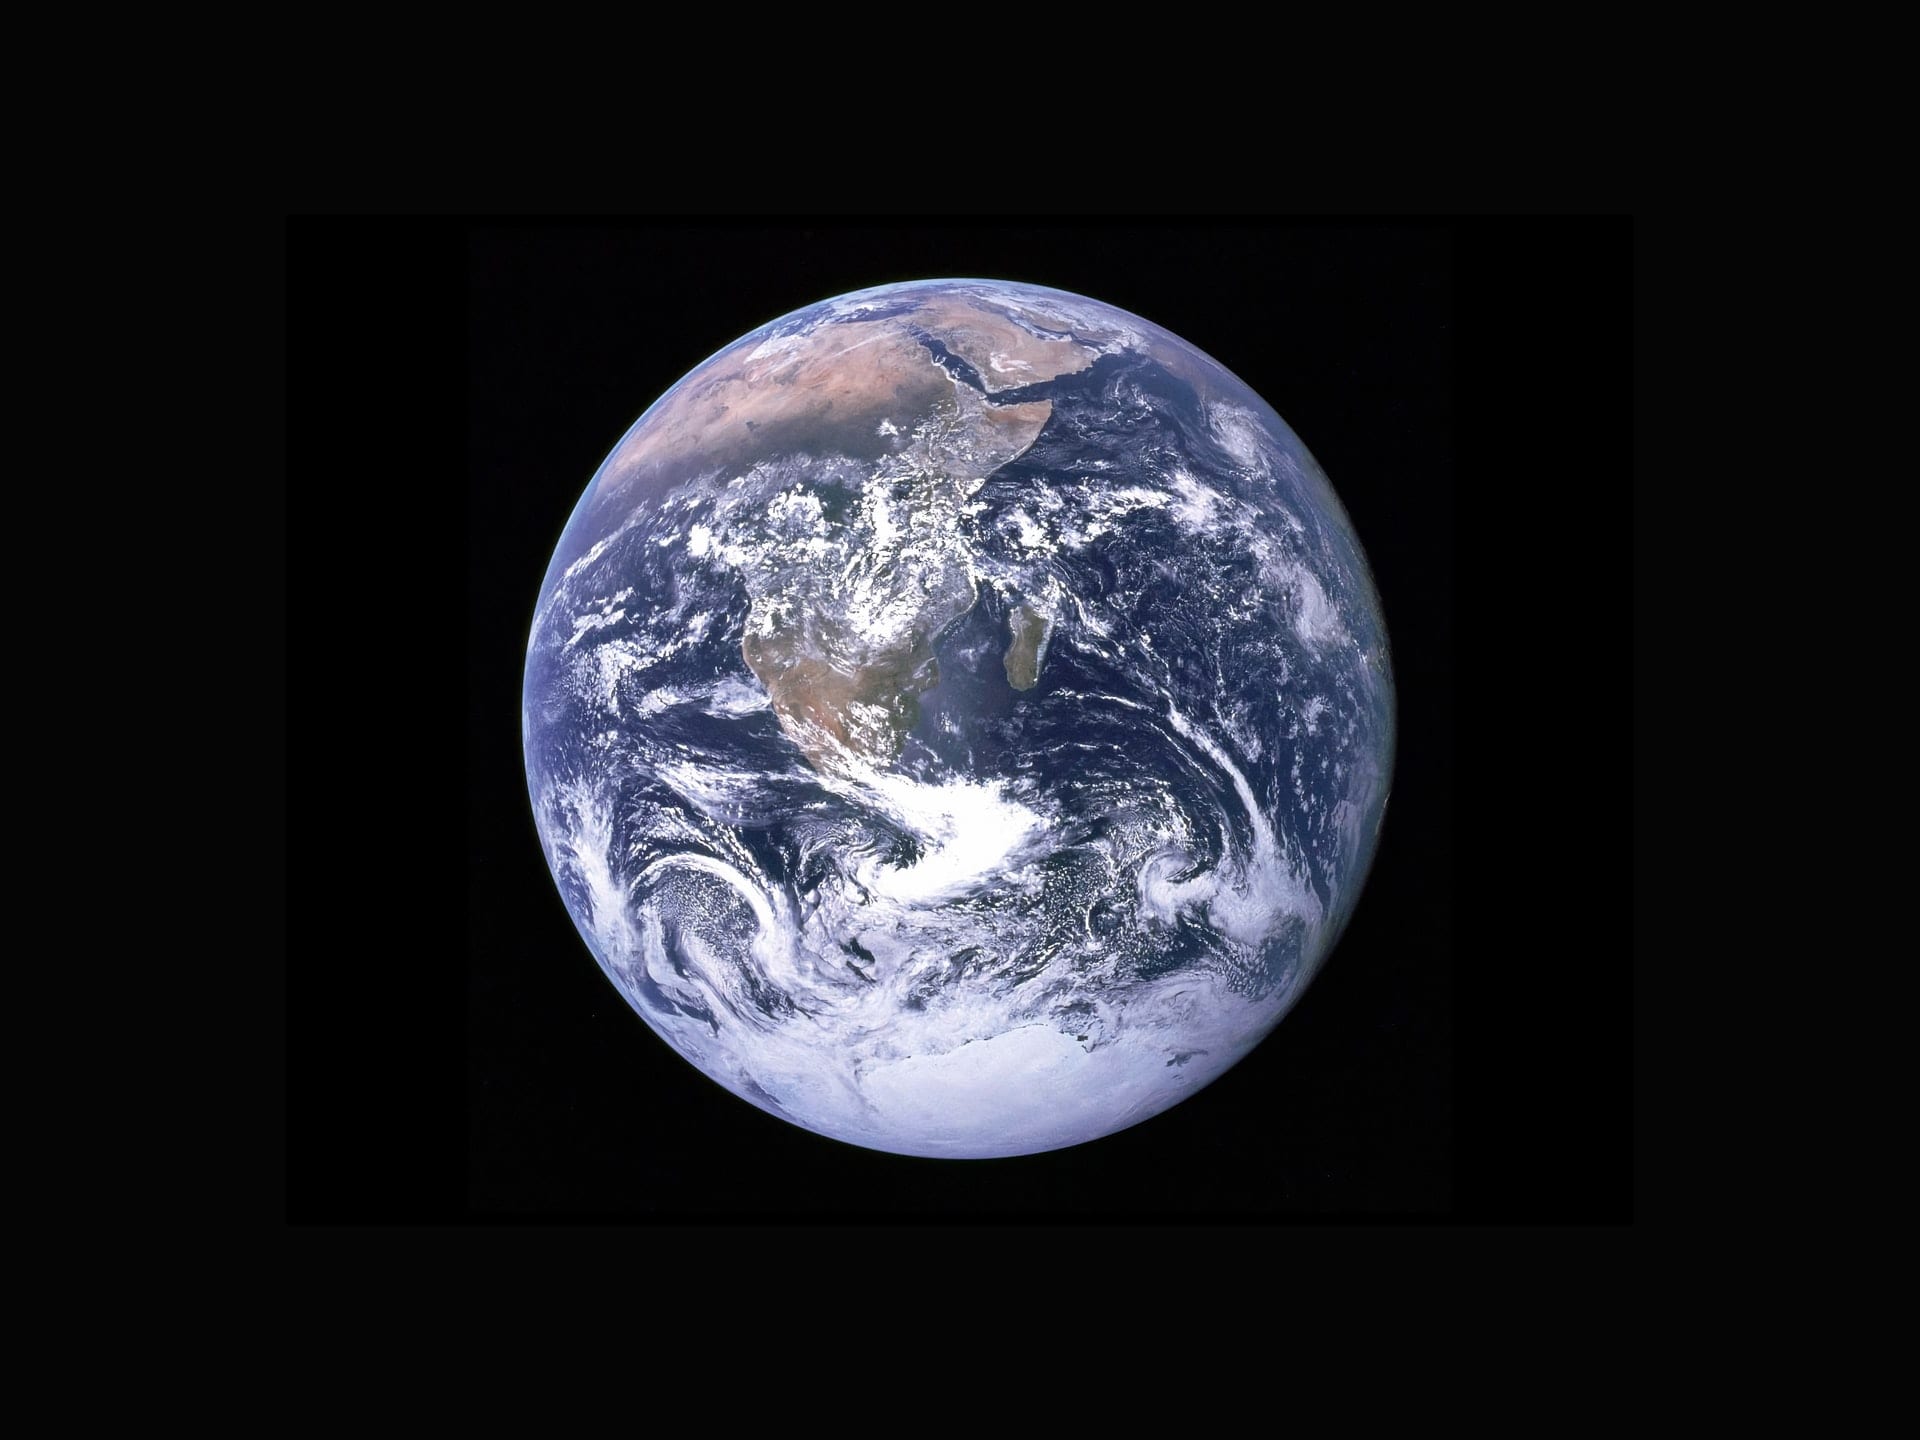 Earth, as seen from Apollo 17